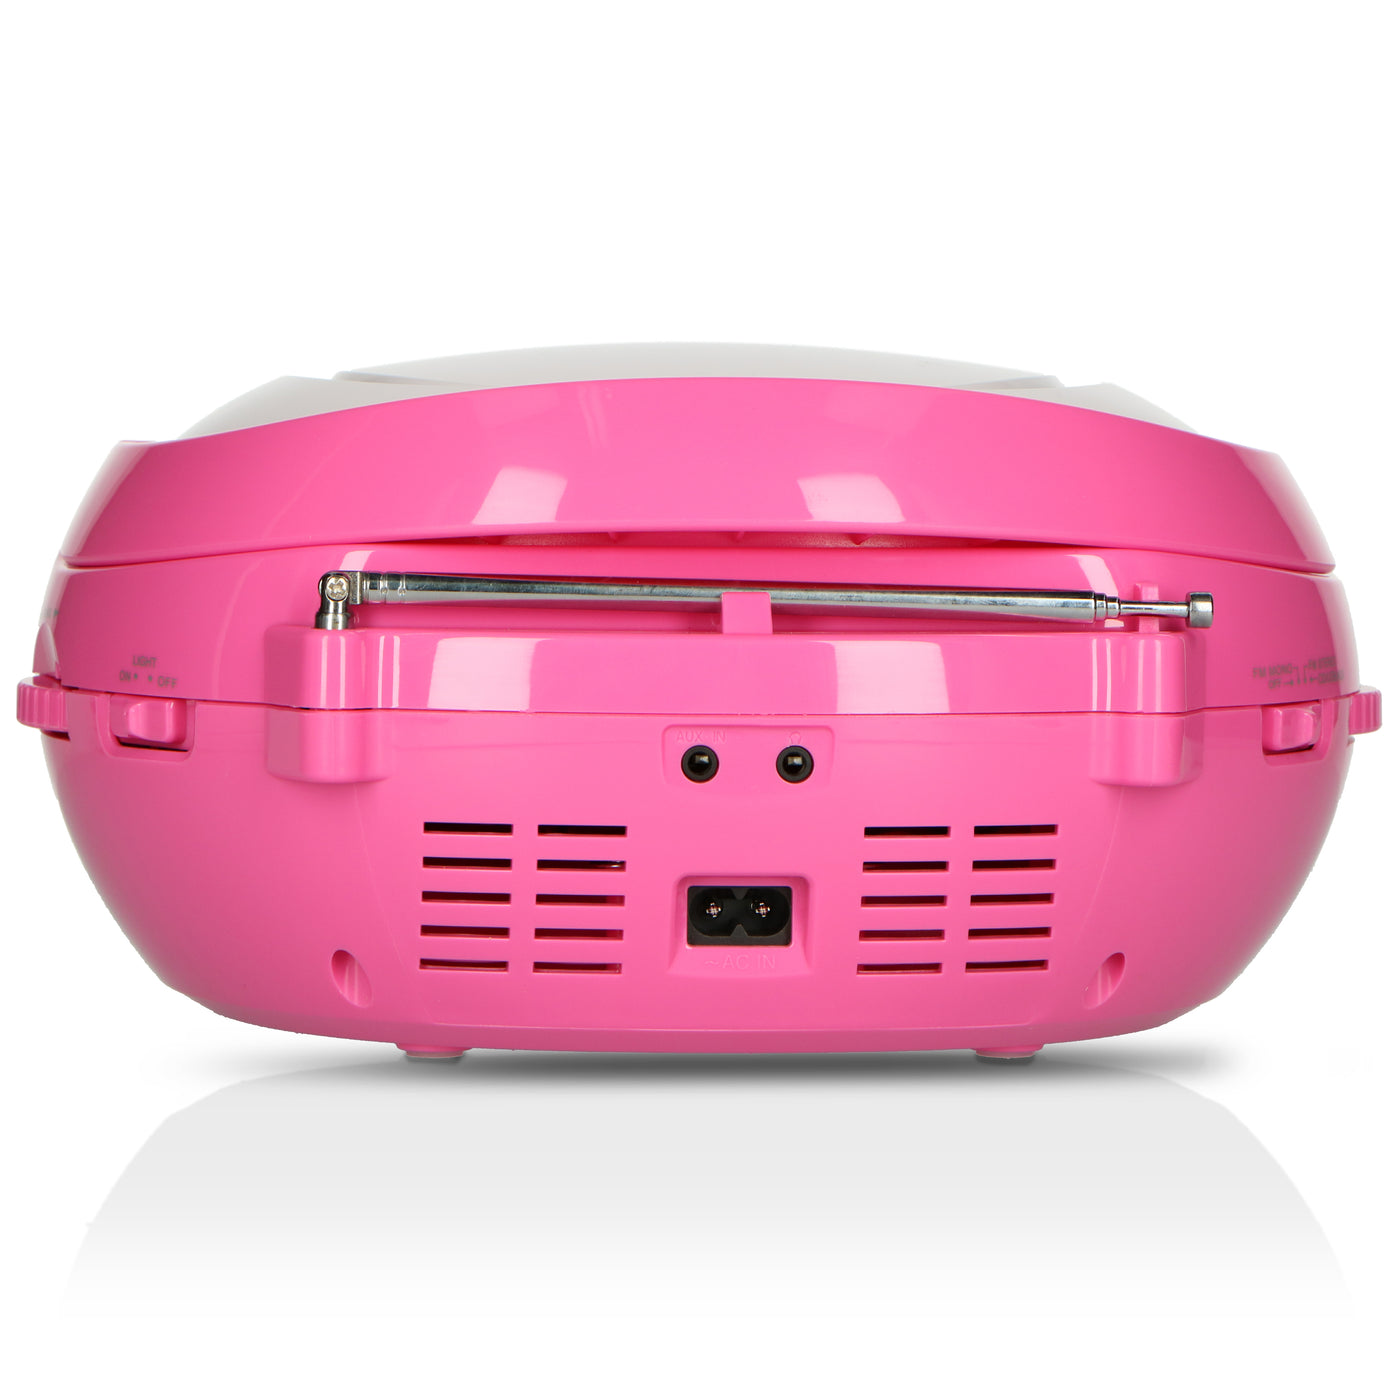 LENCO SCD-650PK - Przenośne radio FM CD/MP3/USB Mikrofon i efekty świetlne - Różowy